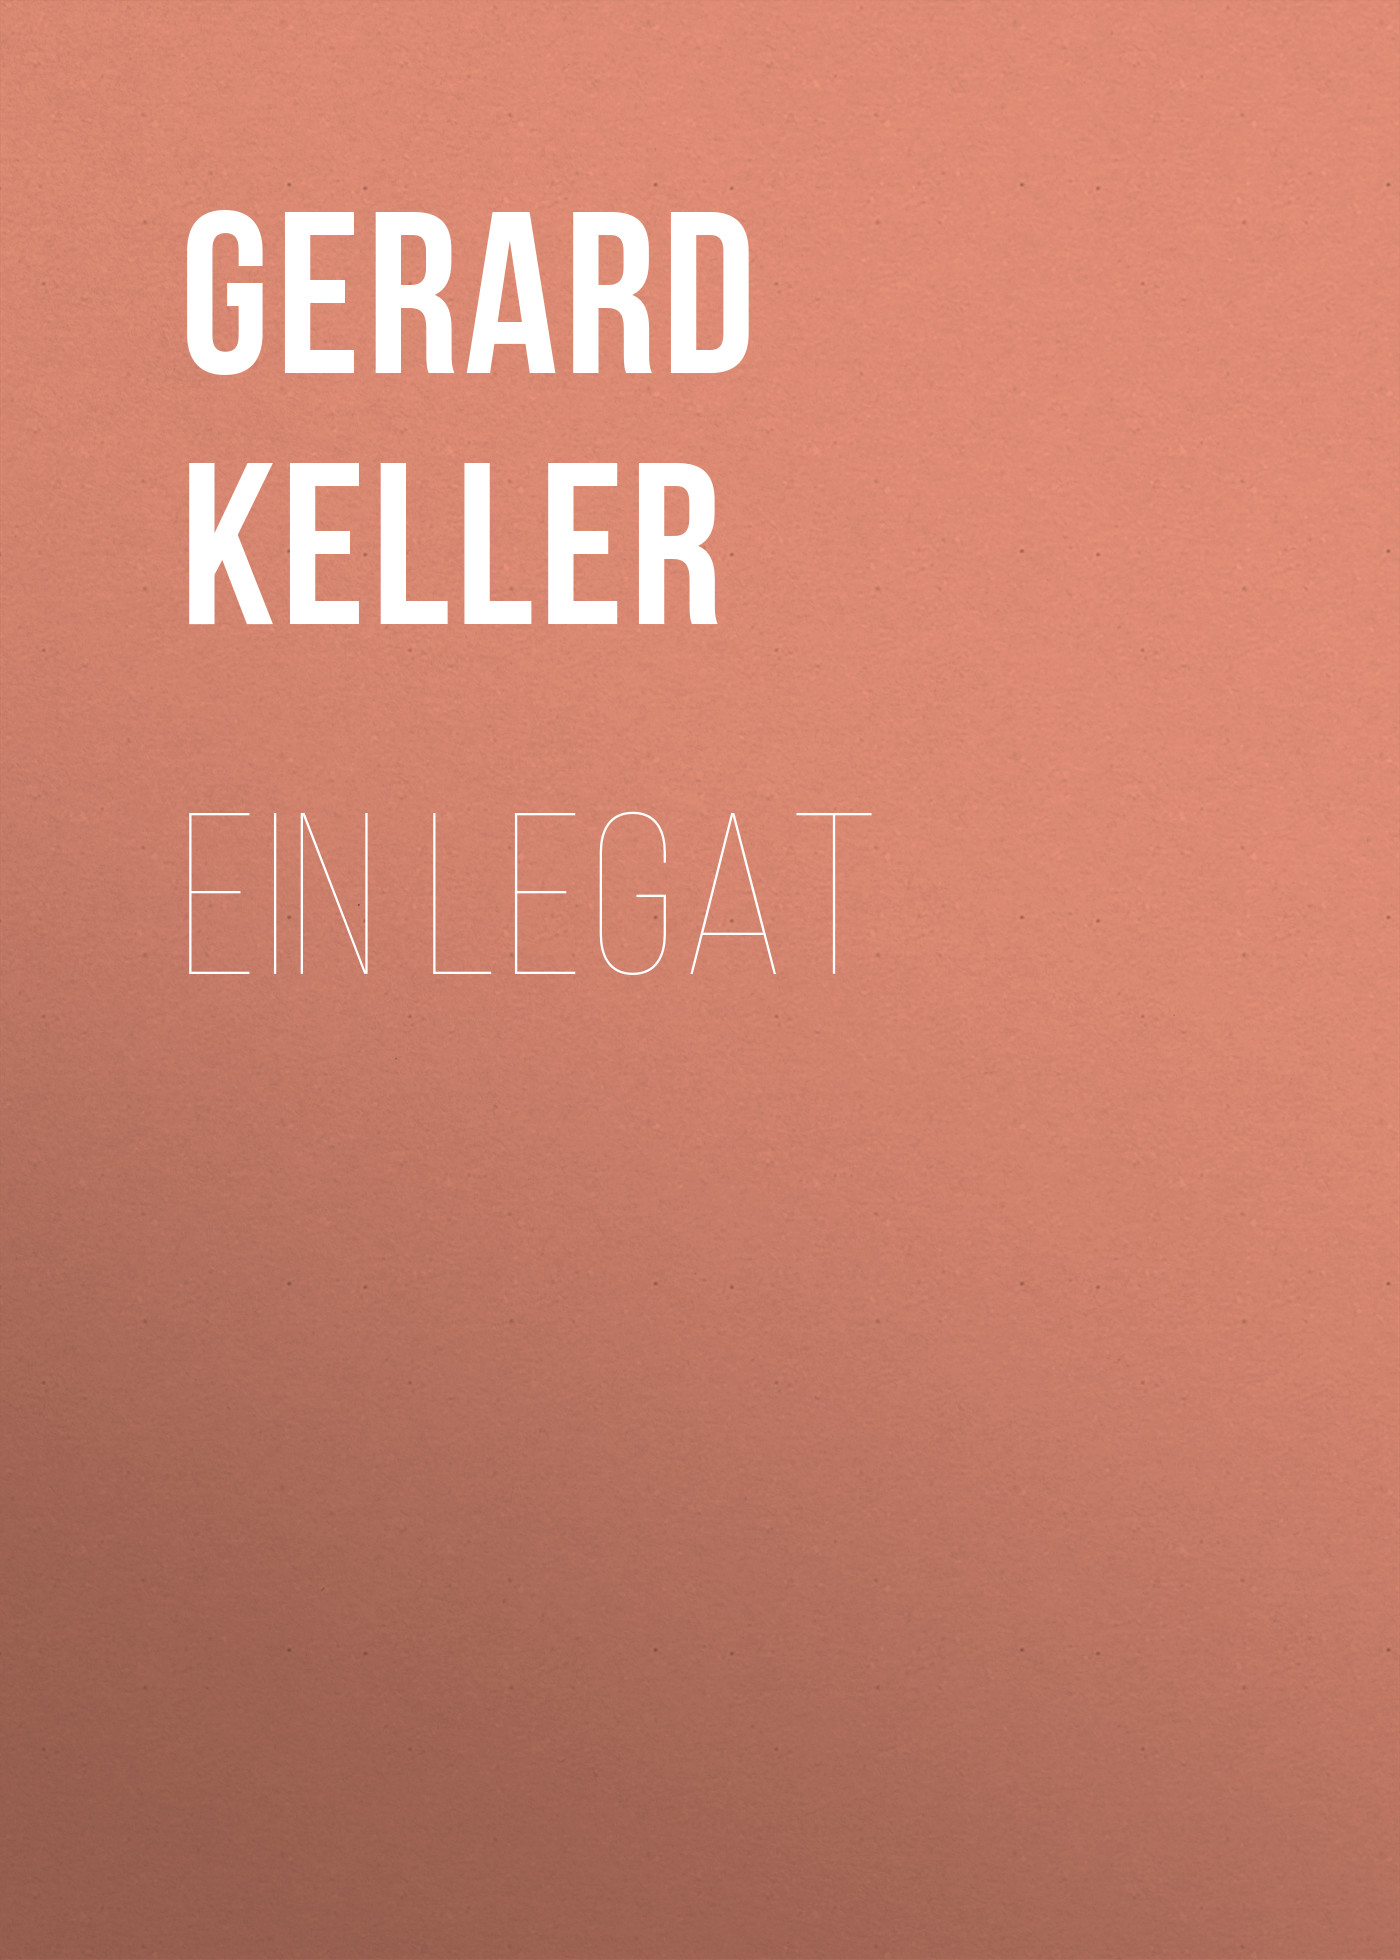 Книга Ein Legat из серии , созданная Gerard Keller, может относится к жанру Зарубежная классика. Стоимость электронной книги Ein Legat с идентификатором 48633356 составляет 0 руб.